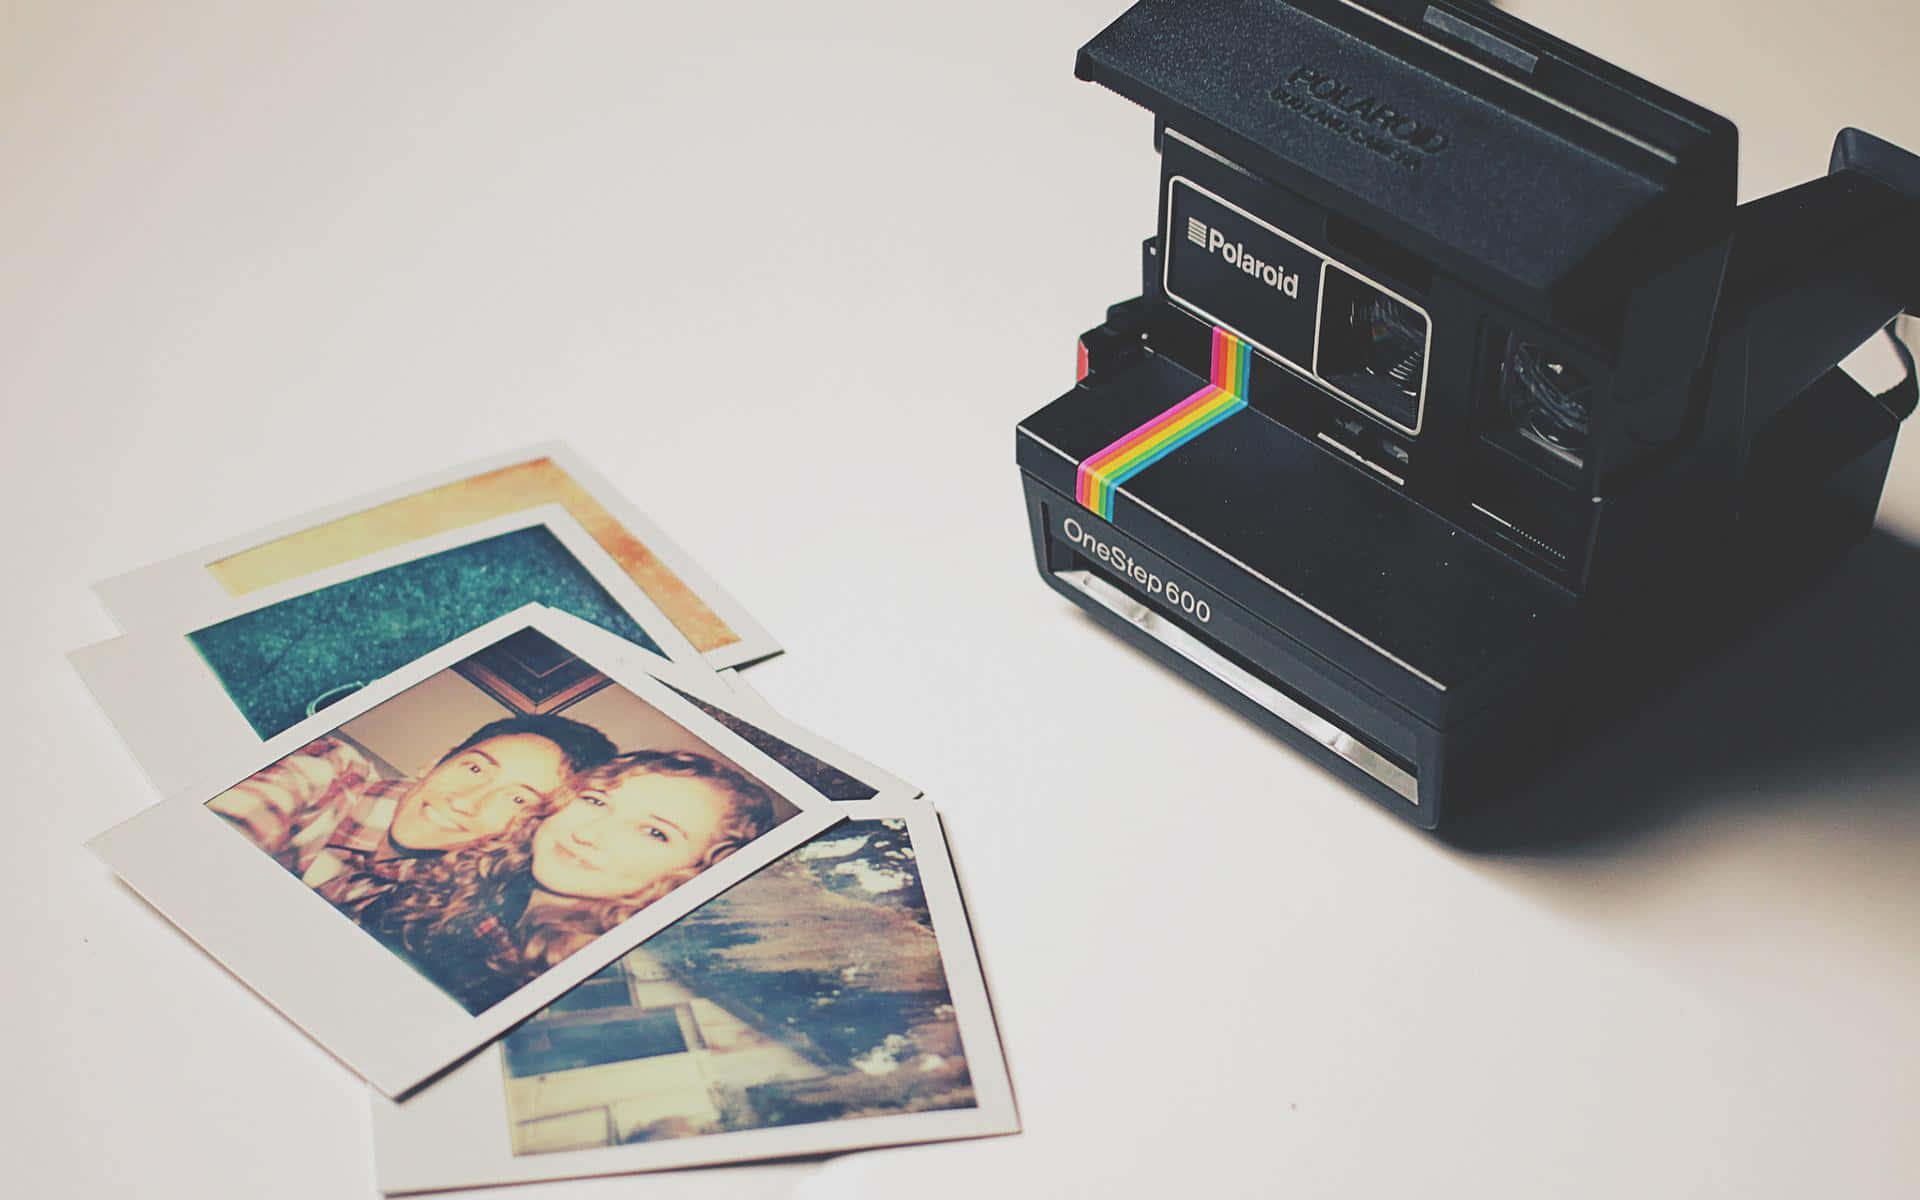 Umacâmera Polaroid